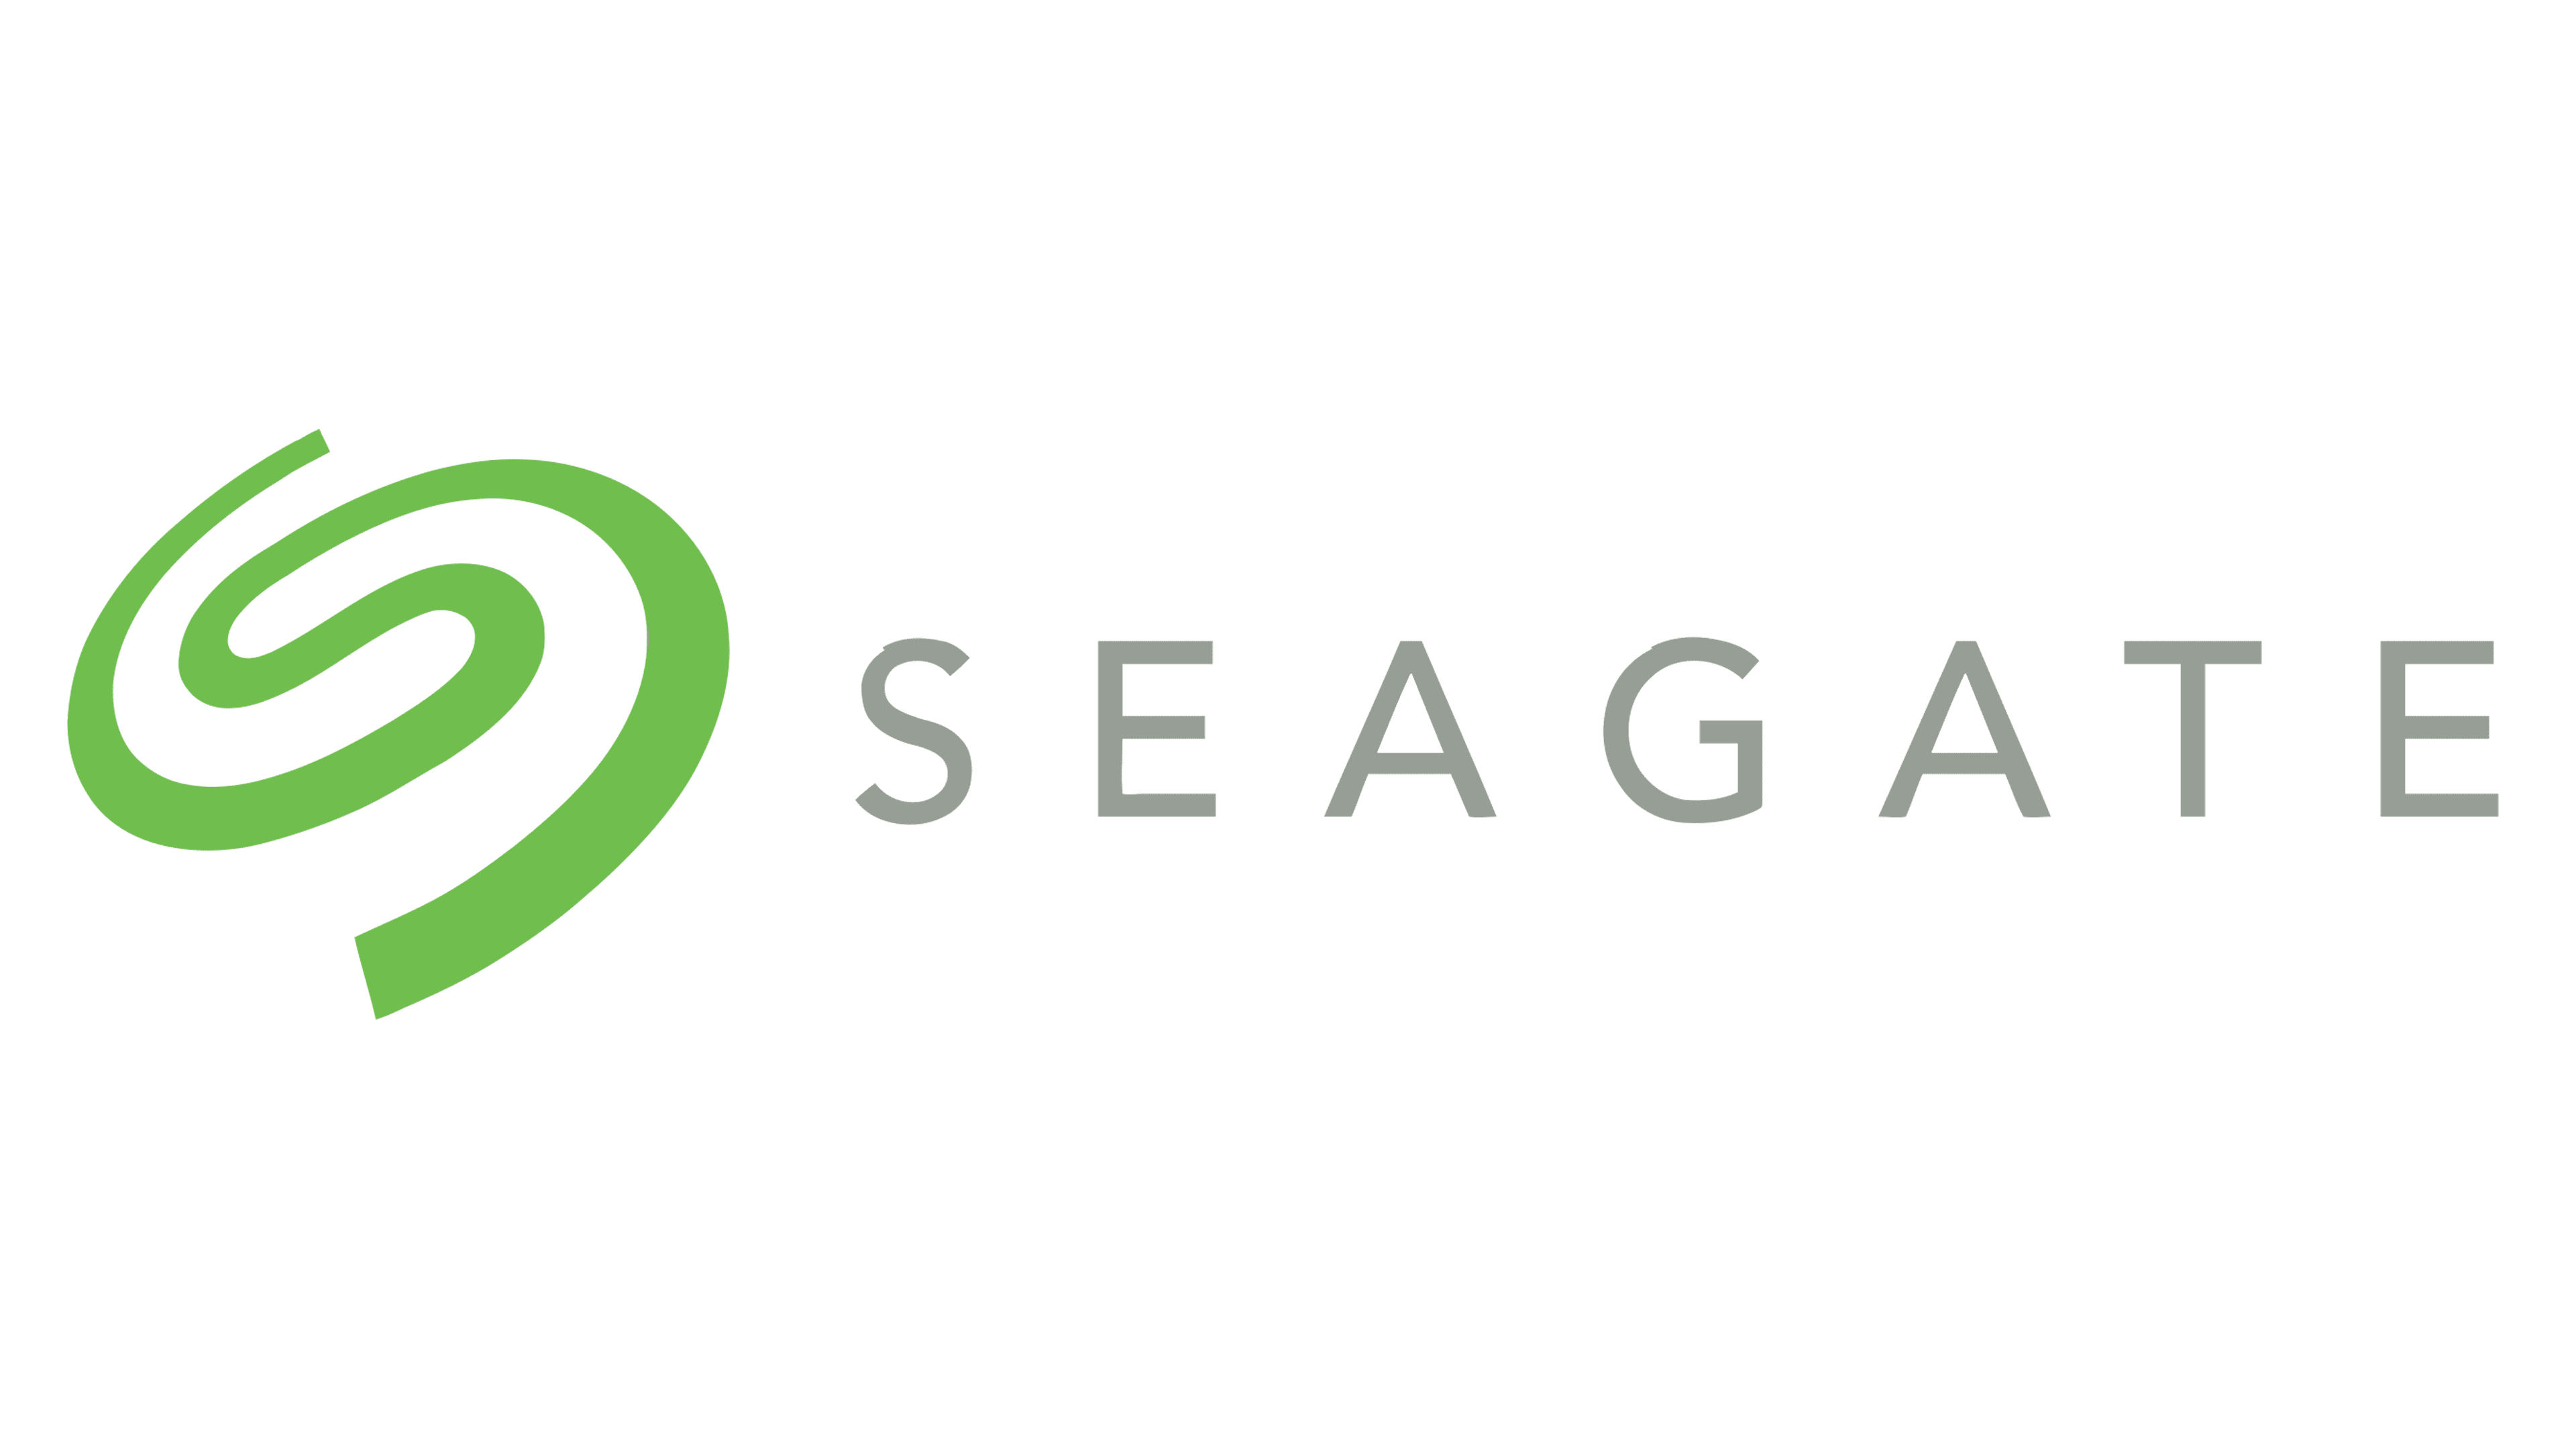 Seagate